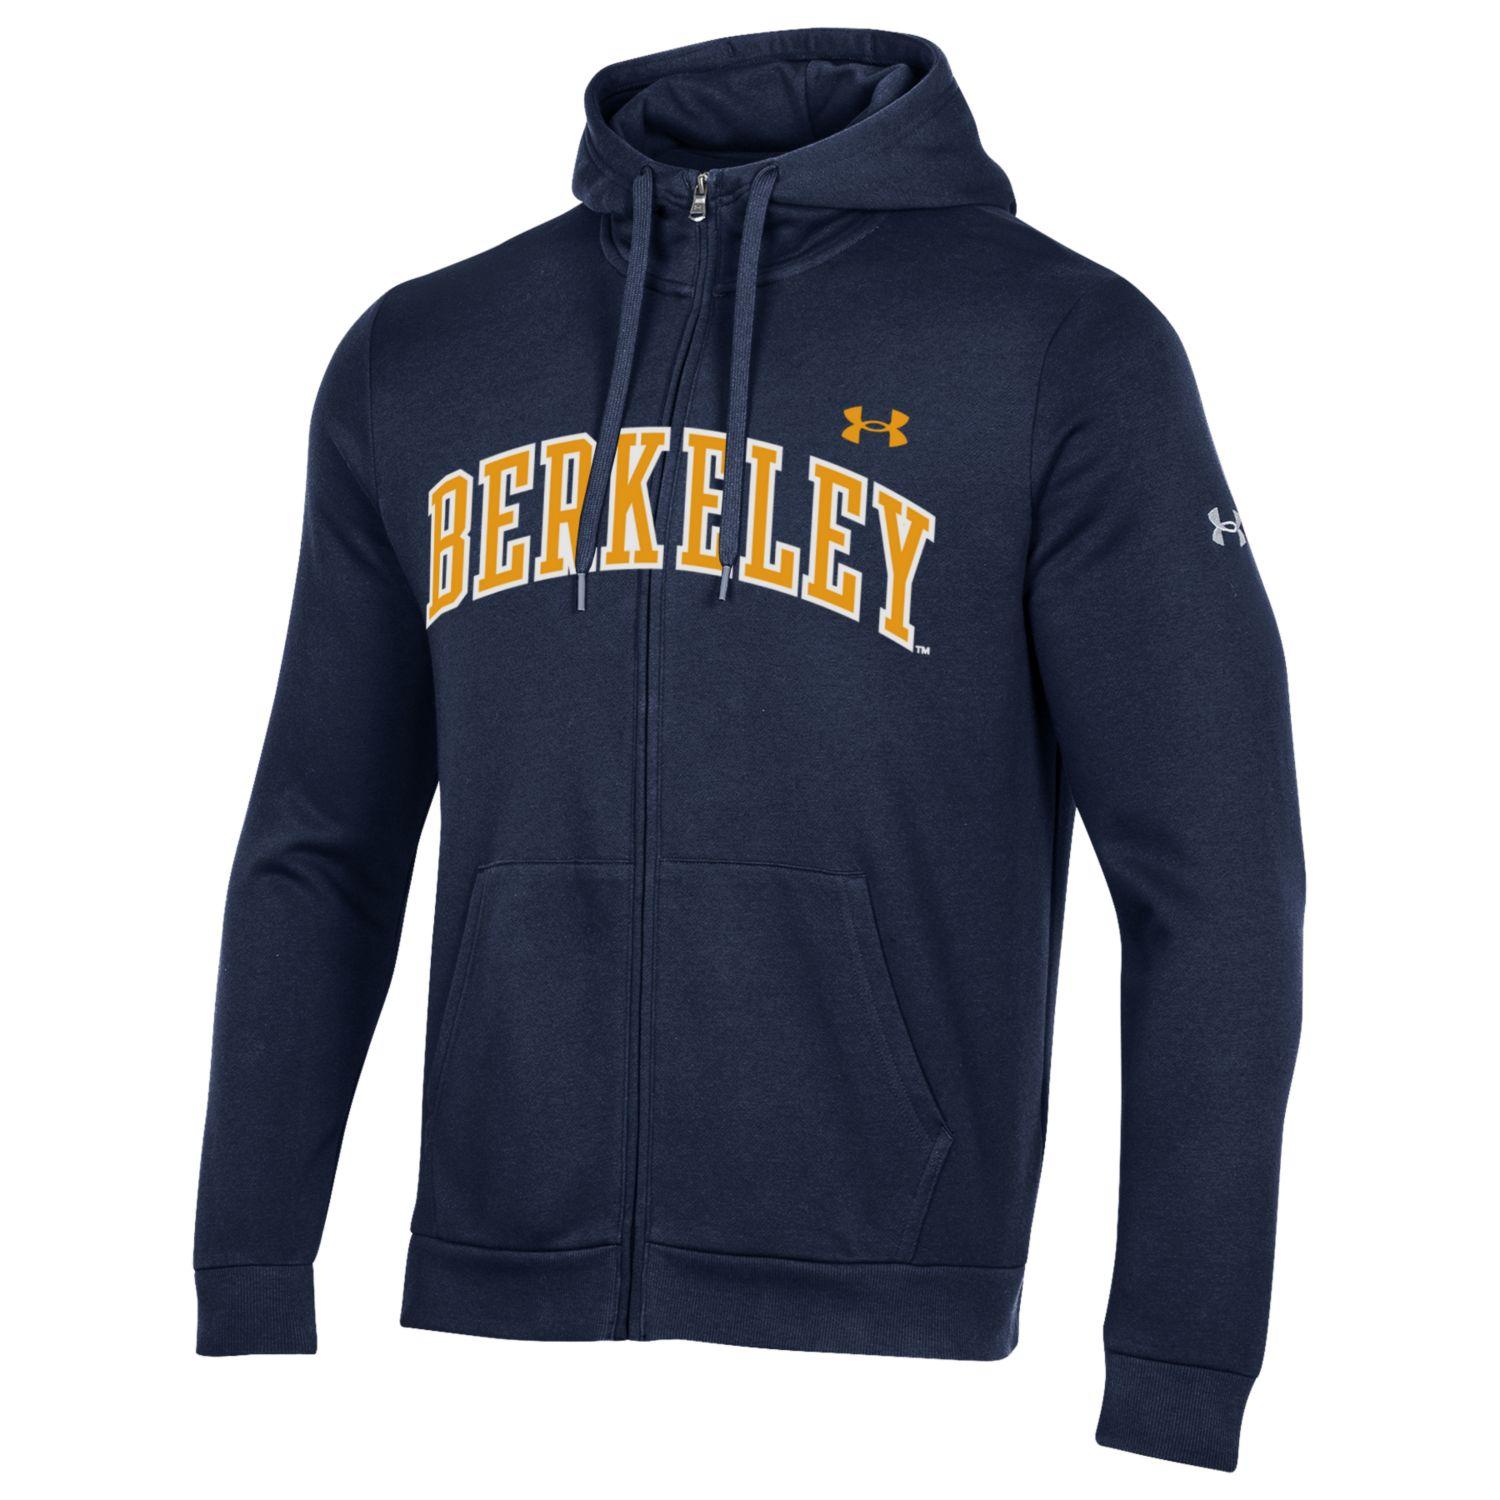 U.C. Berkeley Under Armour Men's Berkeley arch applique zip-up hoodie sweatshirt-Navy-Shop College Wear